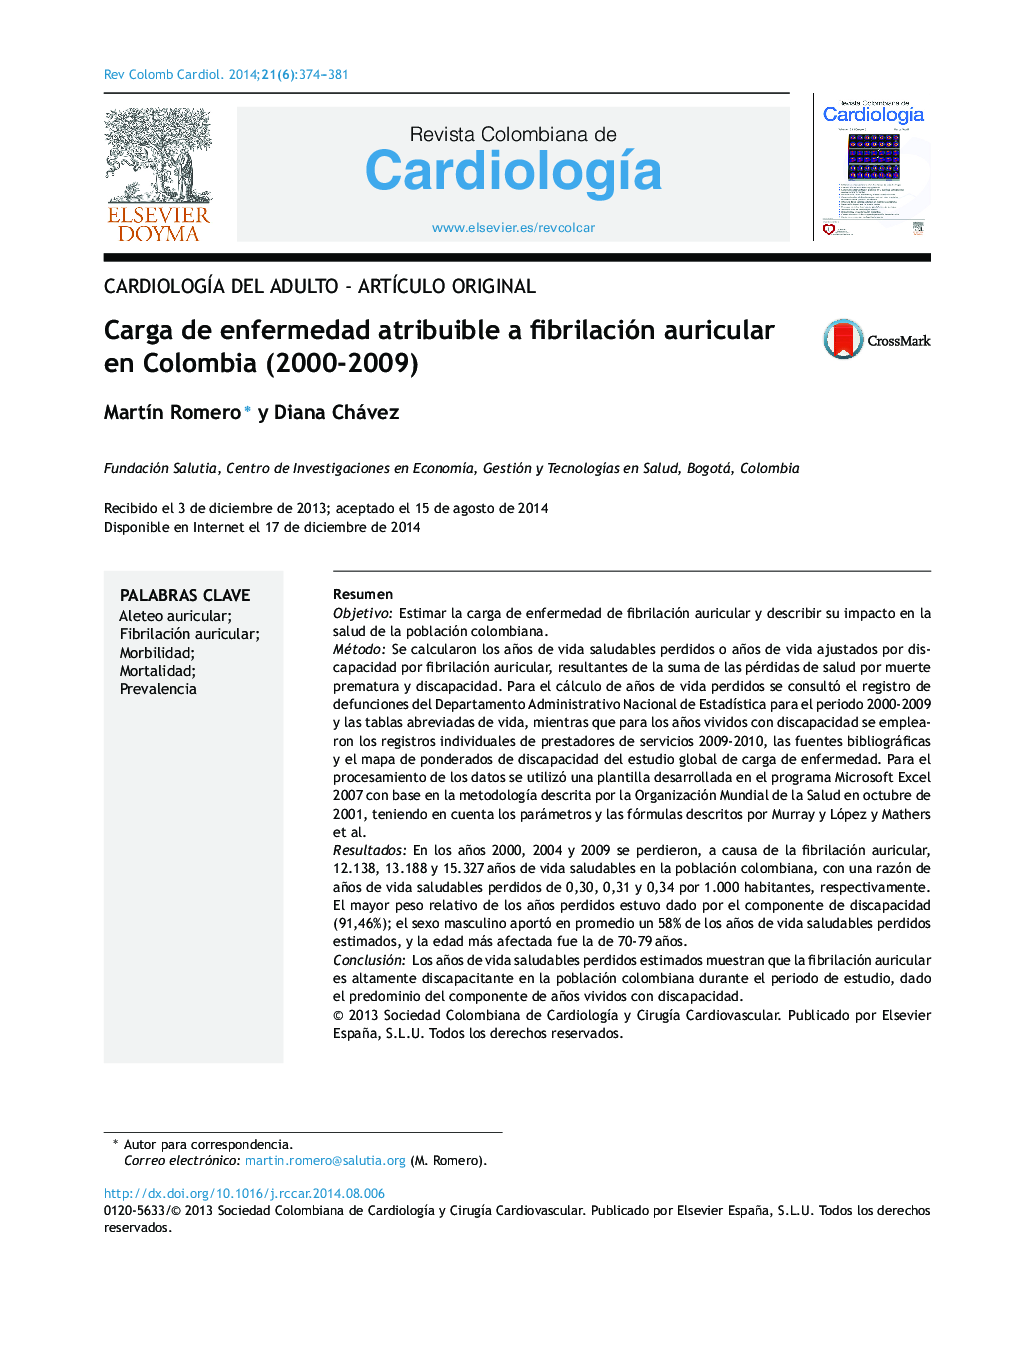 Carga de enfermedad atribuible a fibrilación auricular en Colombia (2000-2009)